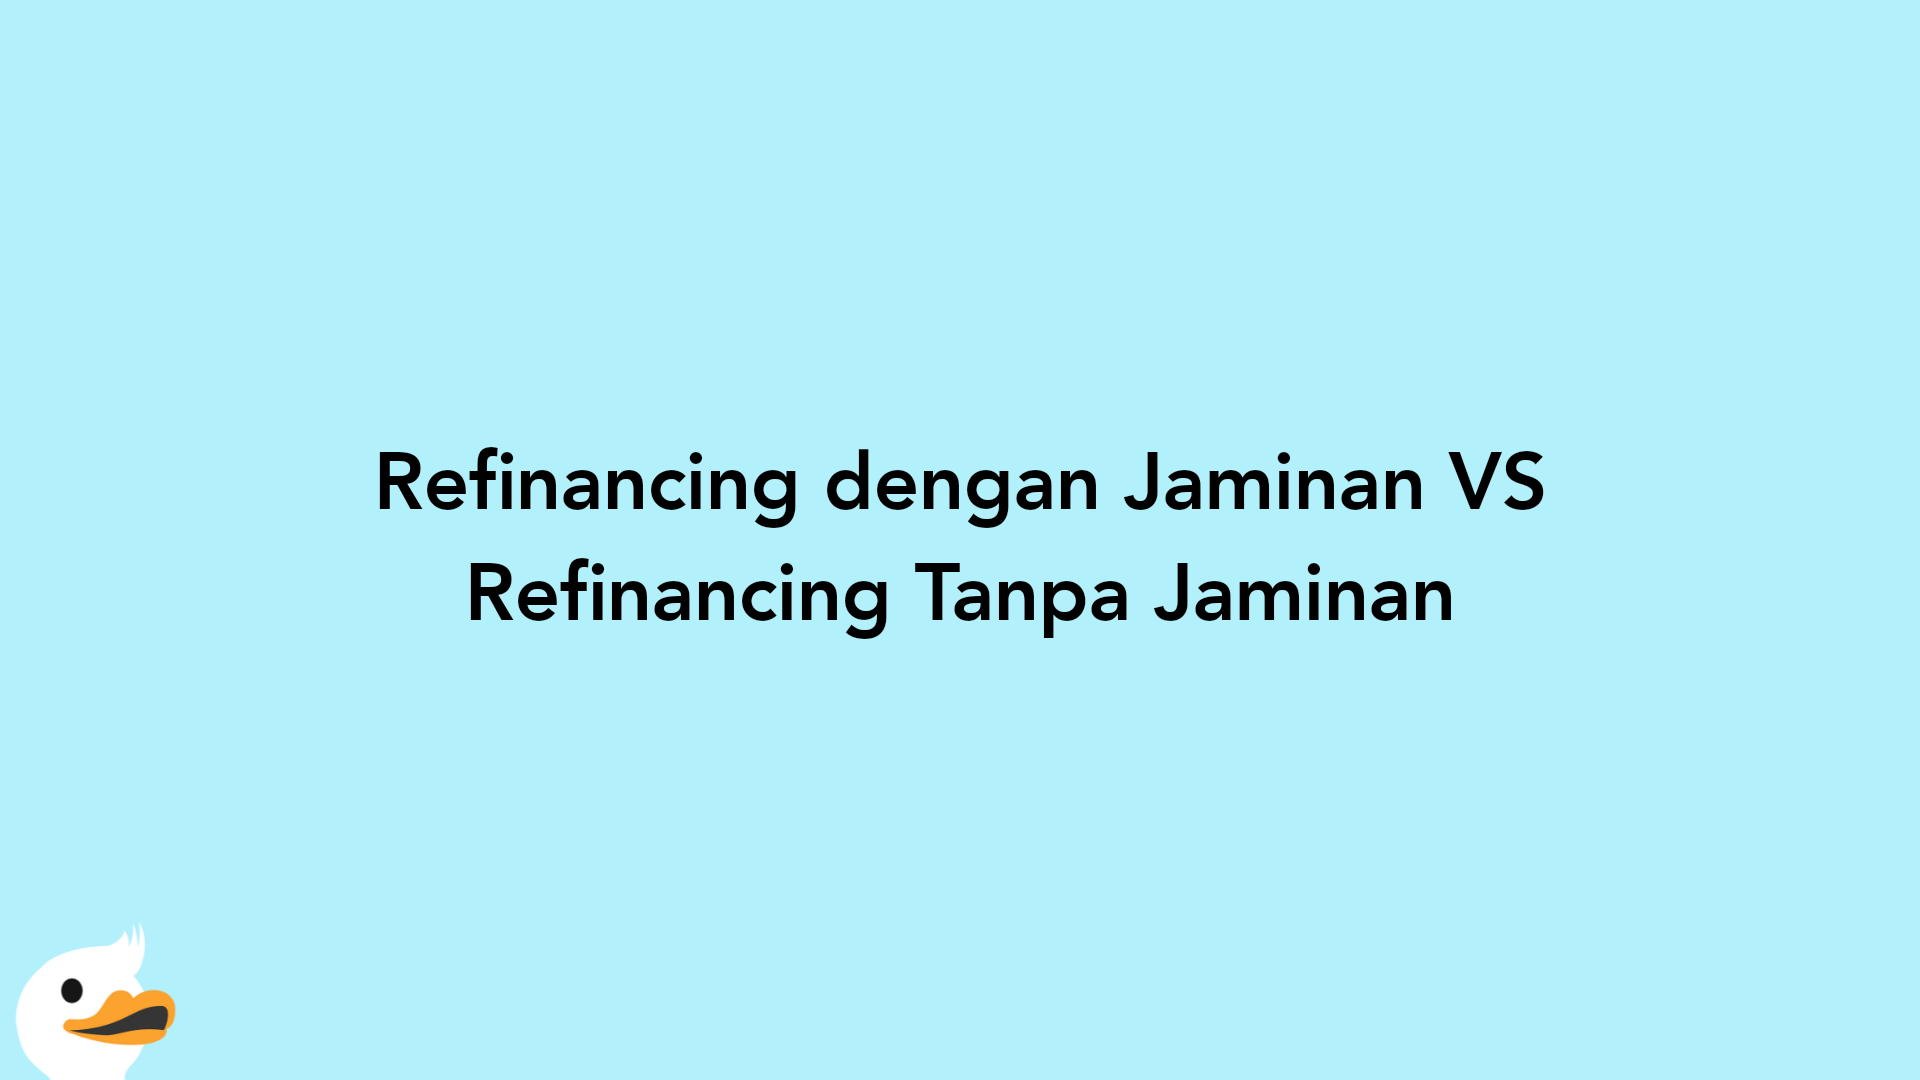 Refinancing dengan Jaminan VS Refinancing Tanpa Jaminan